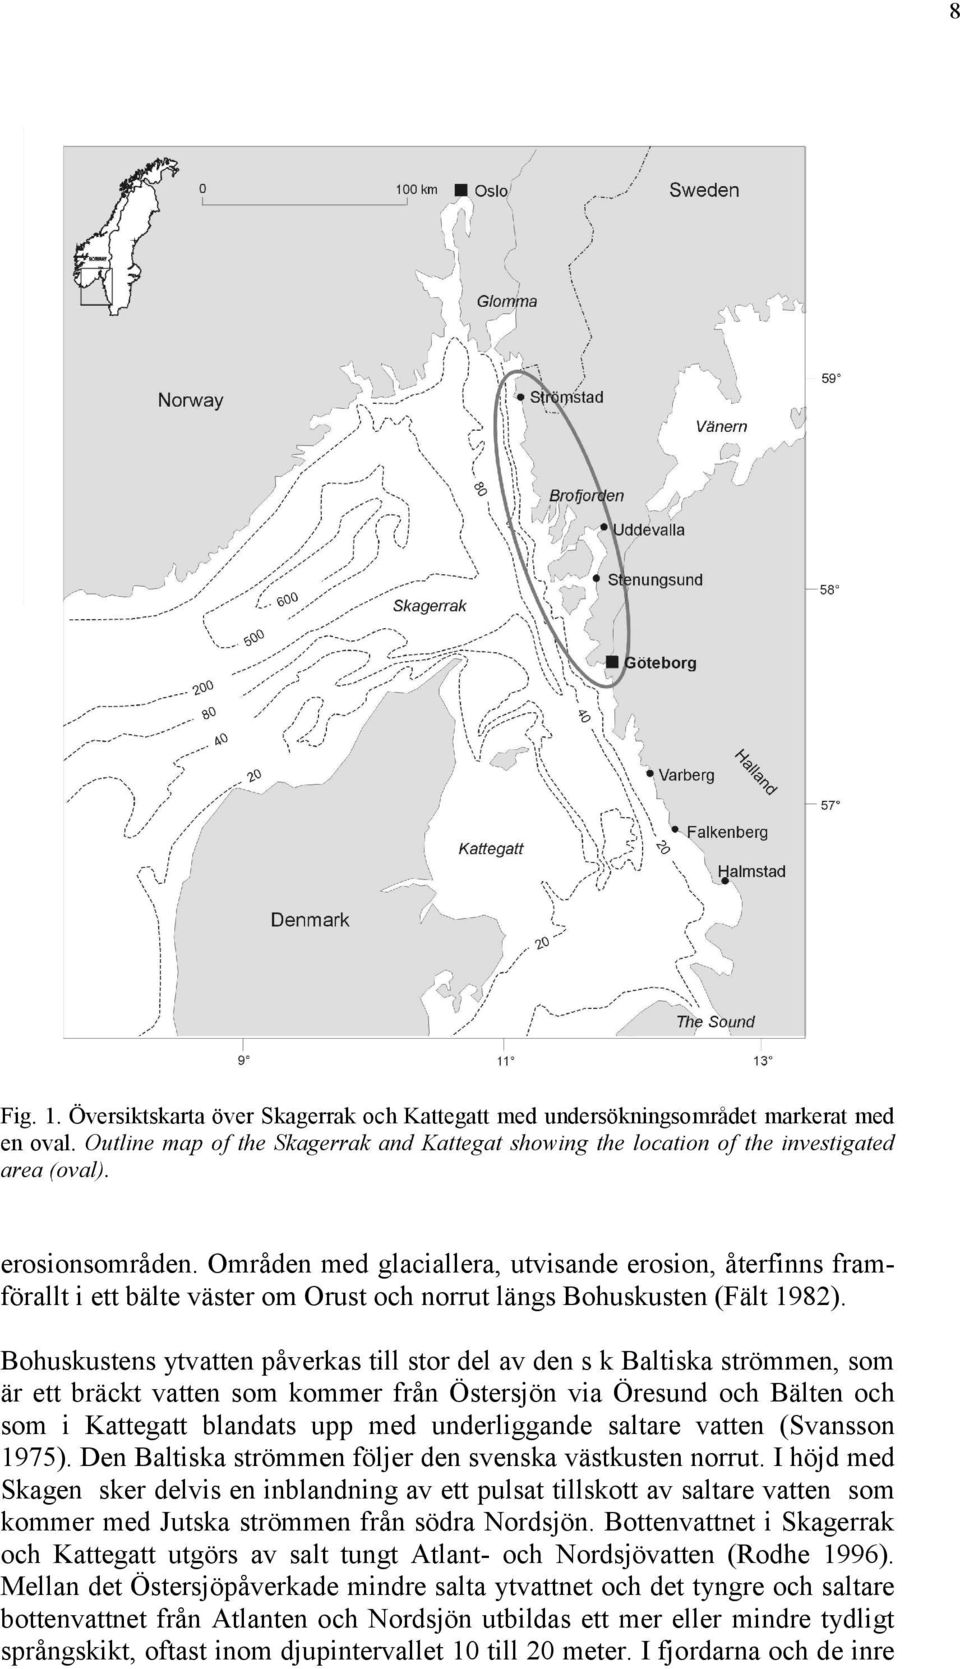 Bohuskustens ytvatten påverkas till stor del av den s k Baltiska strömmen, som är ett bräckt vatten som kommer från Östersjön via Öresund och Bälten och som i Kattegatt blanda upp med underliggande